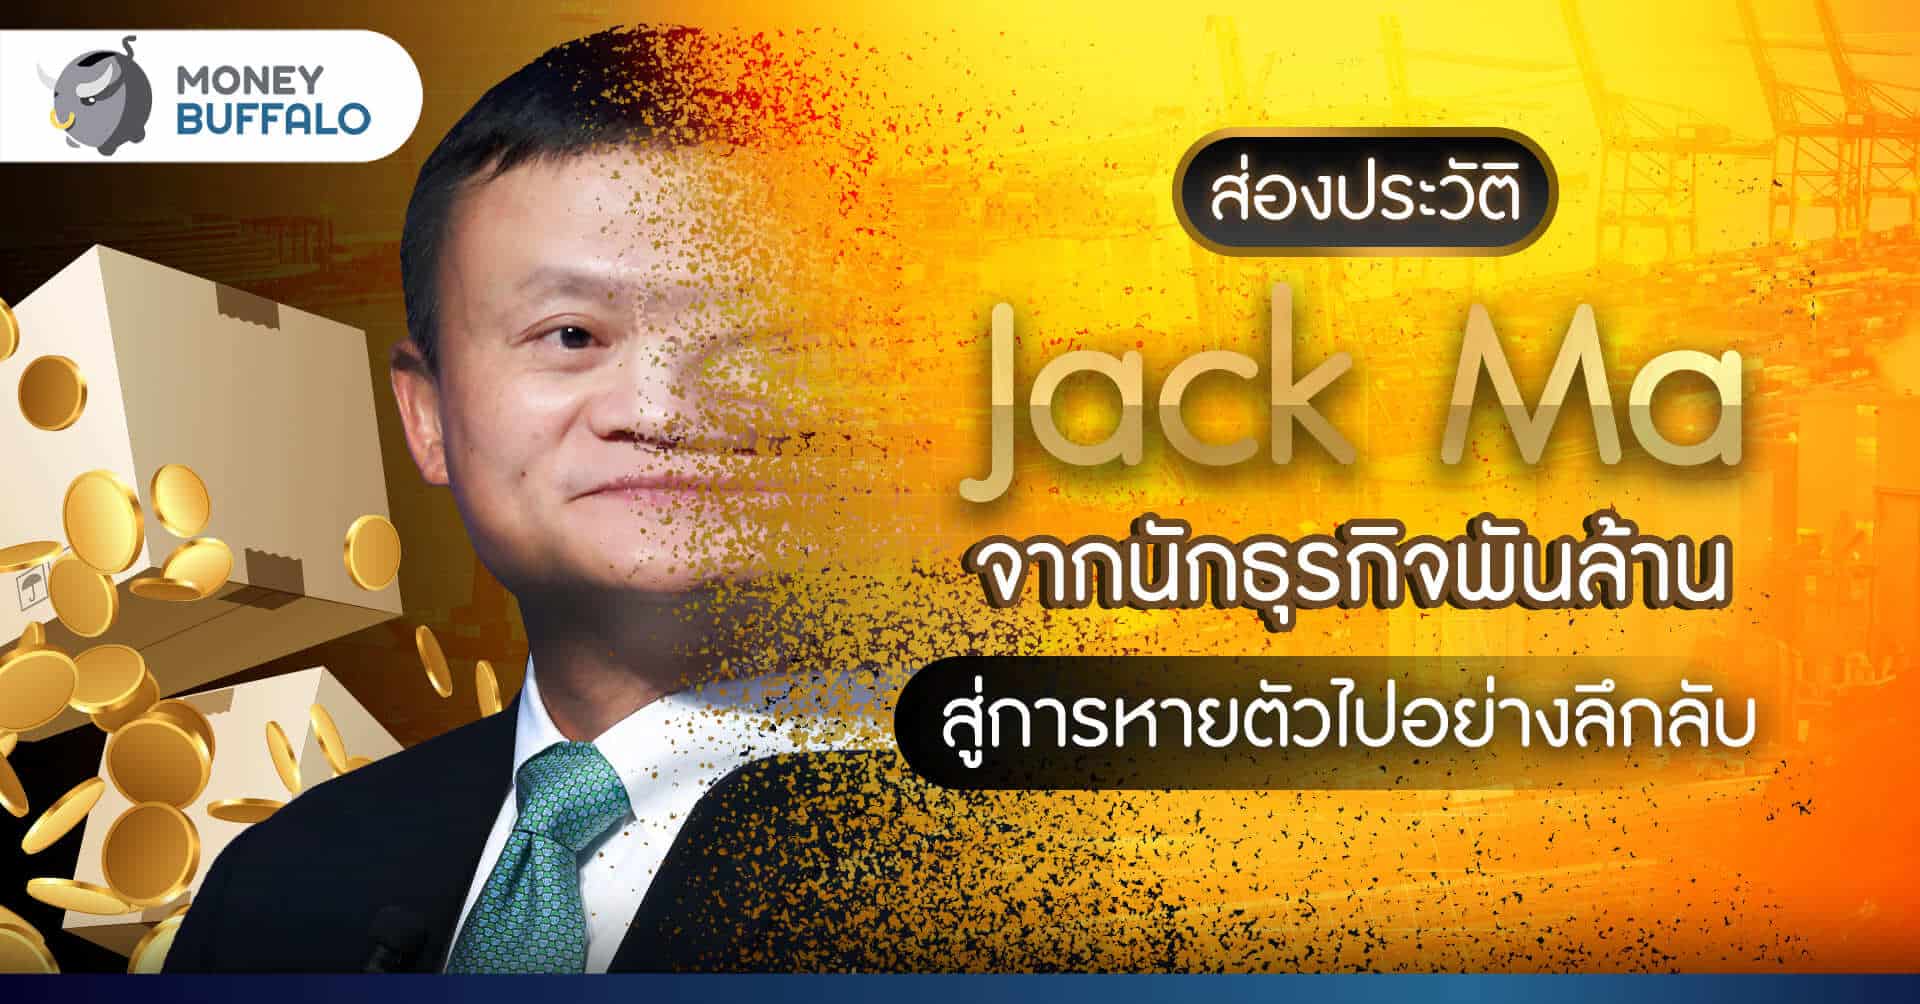 ส่องประวัติ Jack Ma จากนักธุรกิจพันล้าน สู่การหายตัวไปอย่างลึกลับ